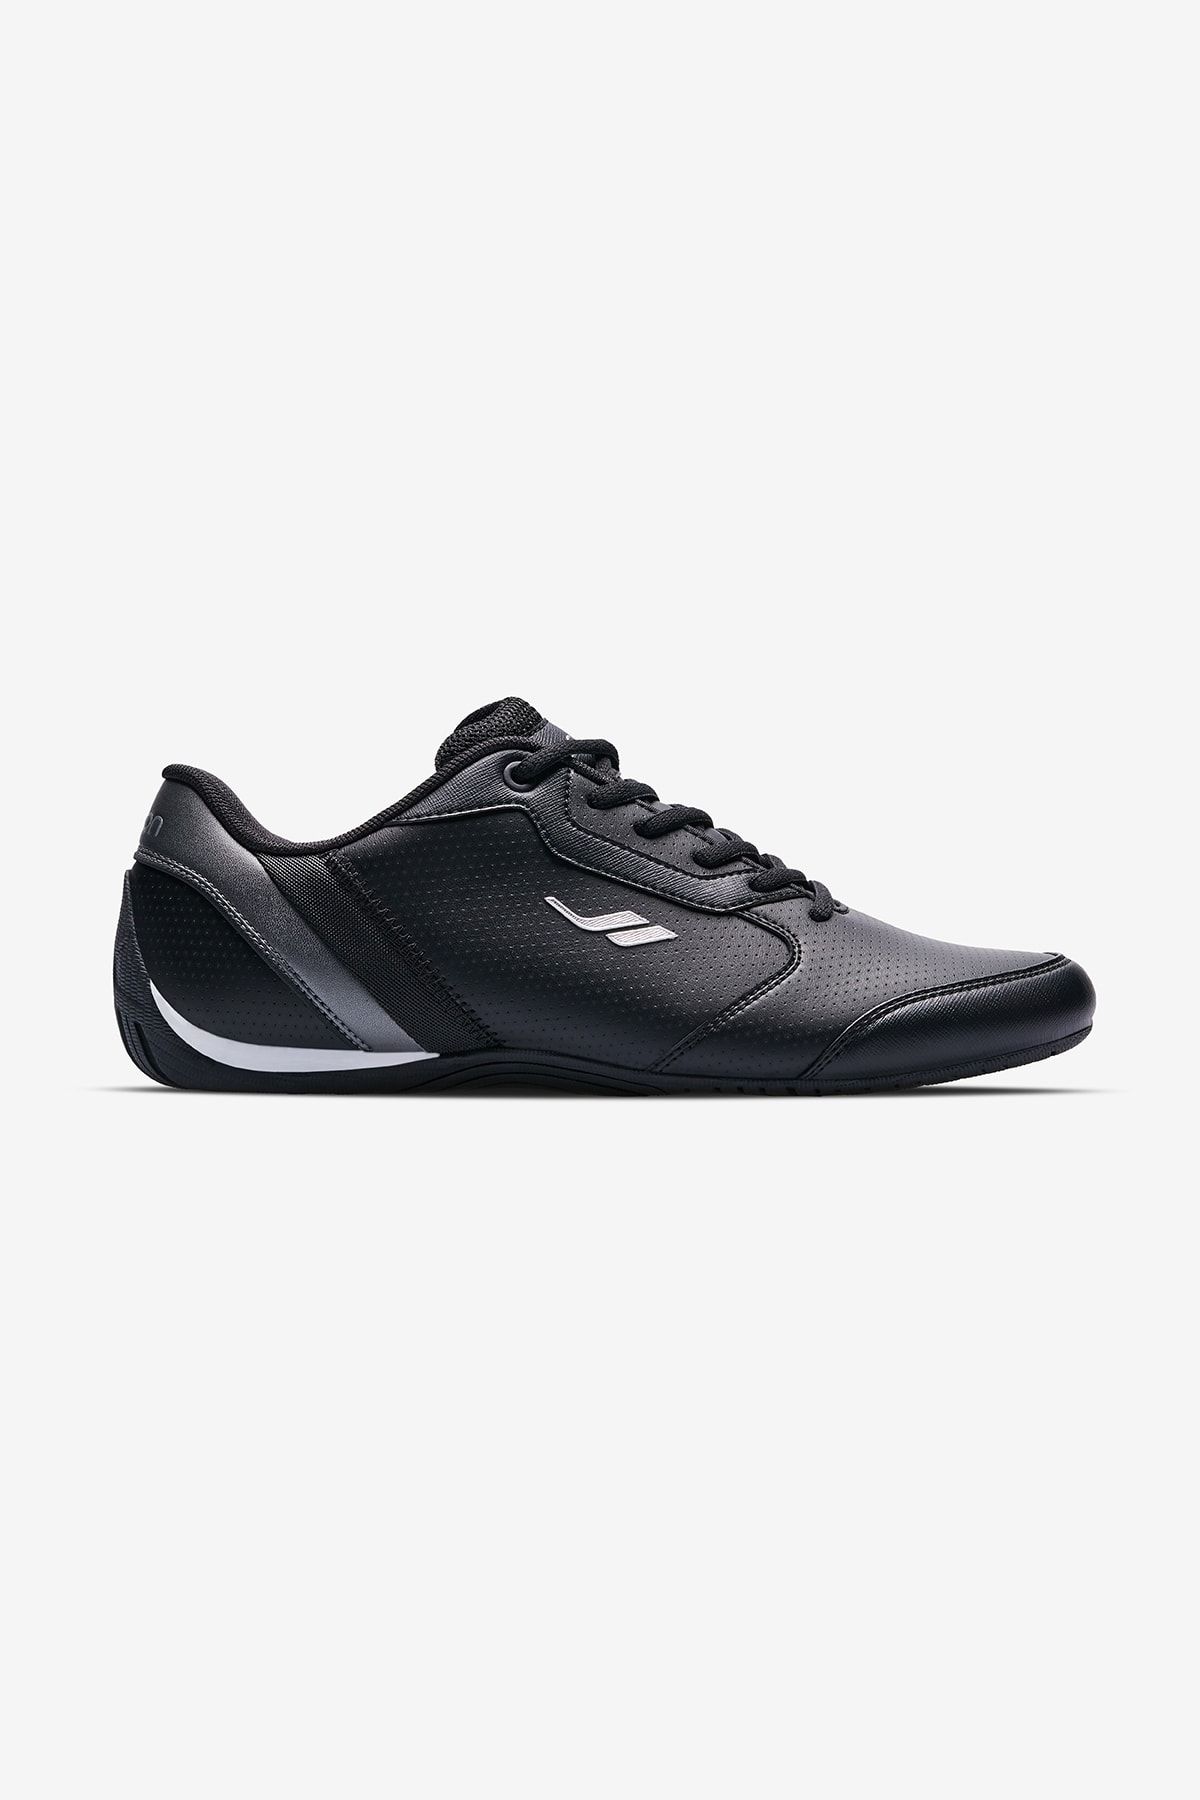 Lescon Journey-2 Siyah Günlük Erkek Sneakers Spor Ayakkabı